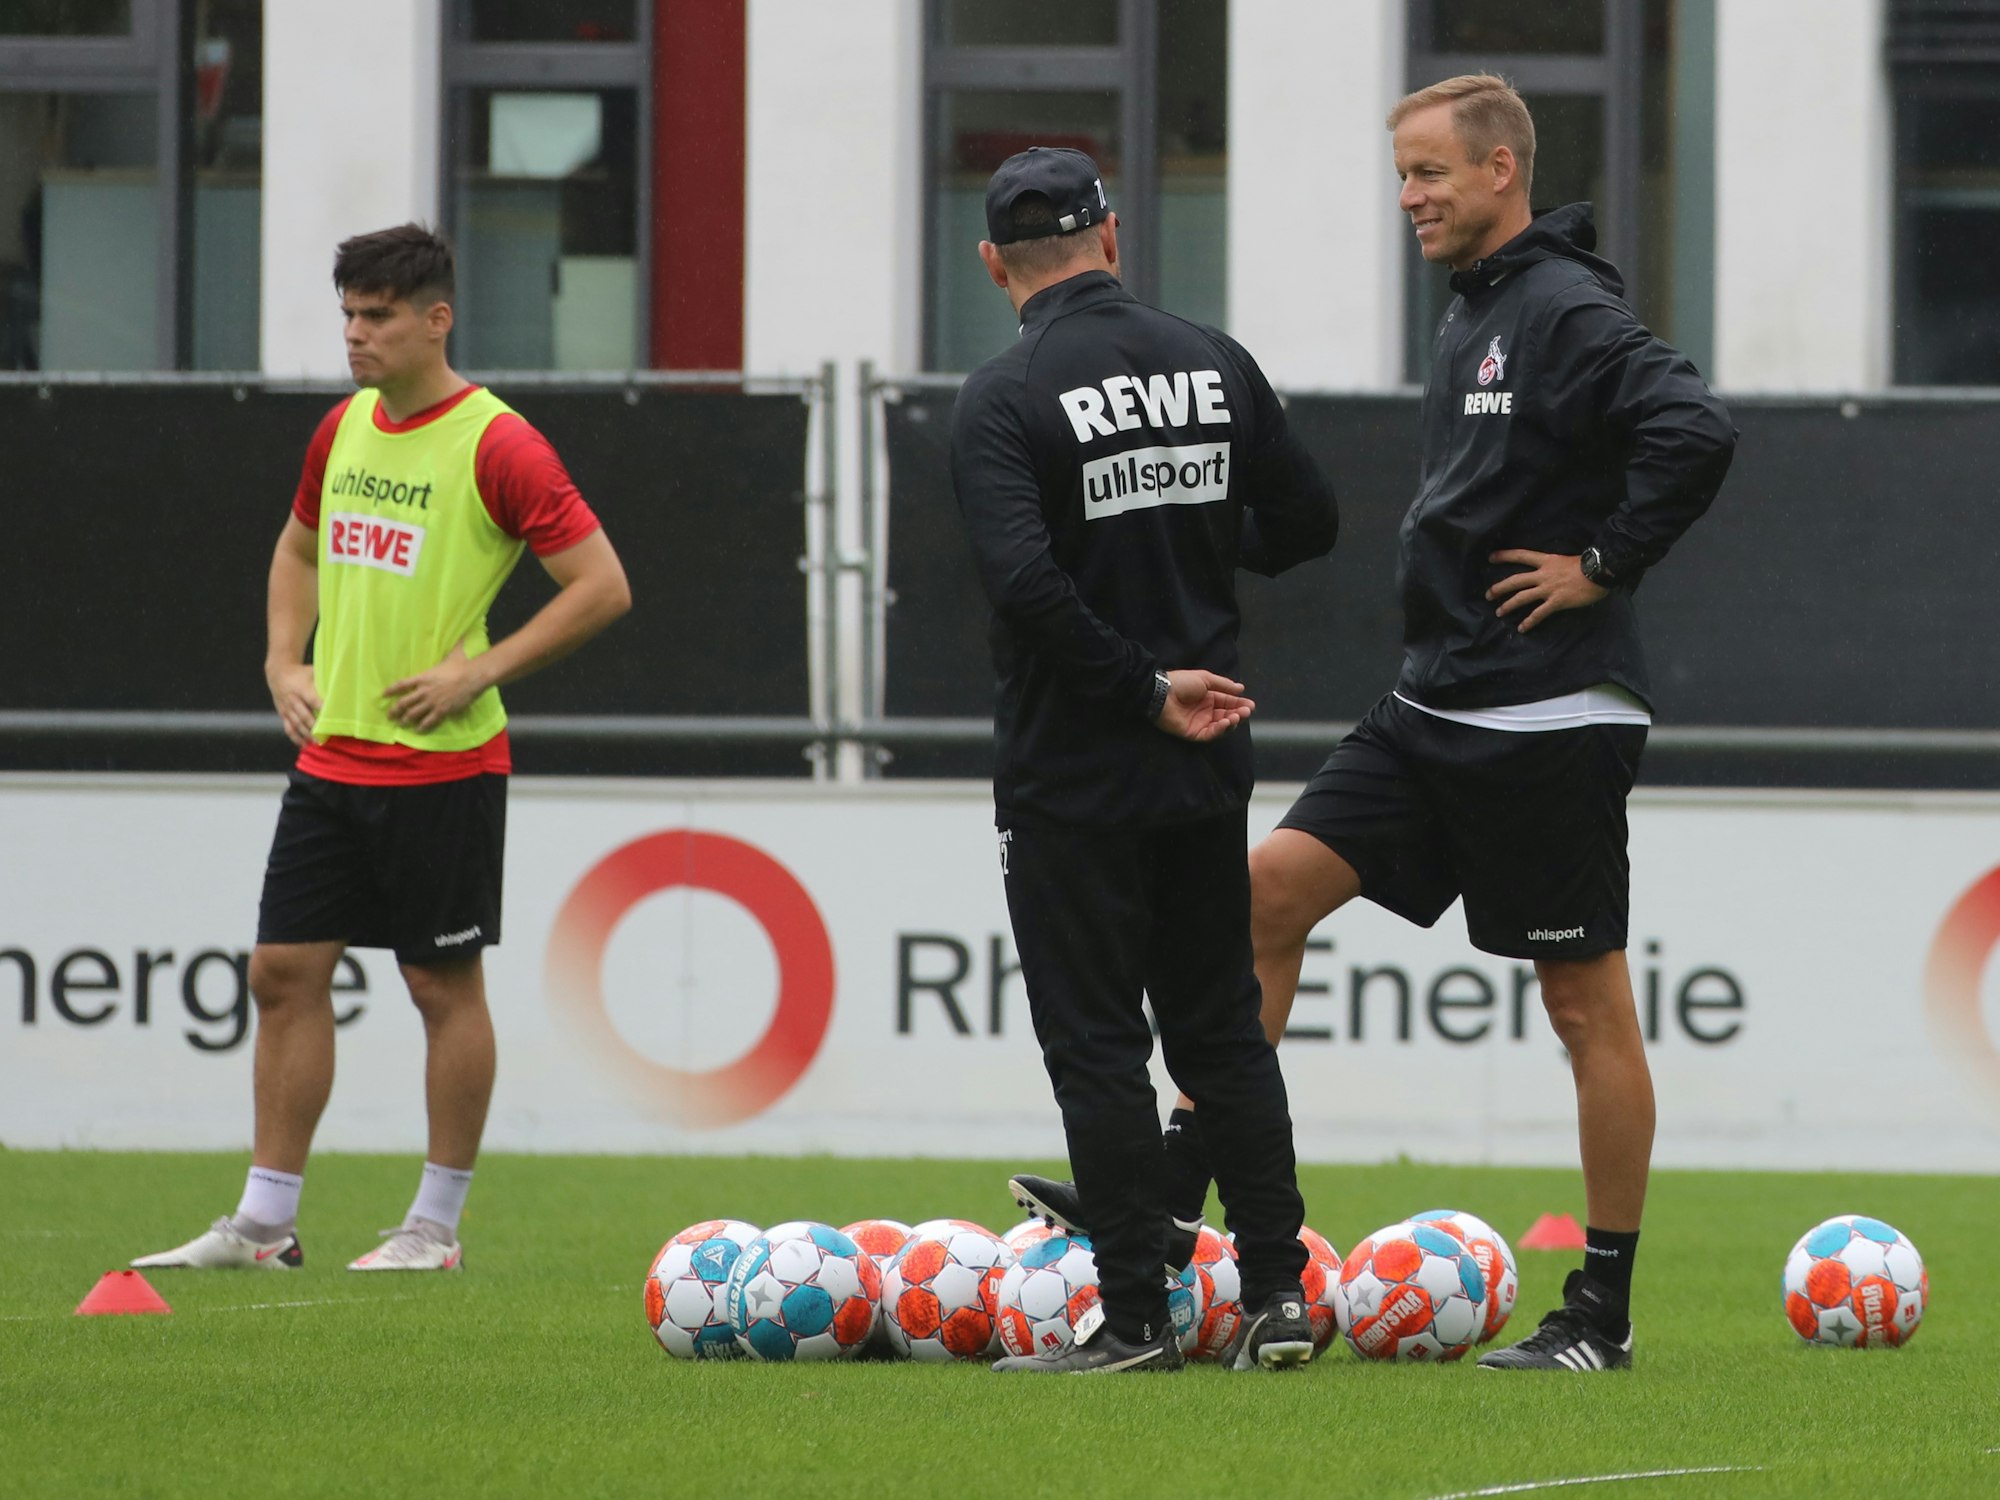 Kevin McKenna und Steffen Baumgart stehen beim 1. FC Köln auf dem Trainingsplatz.